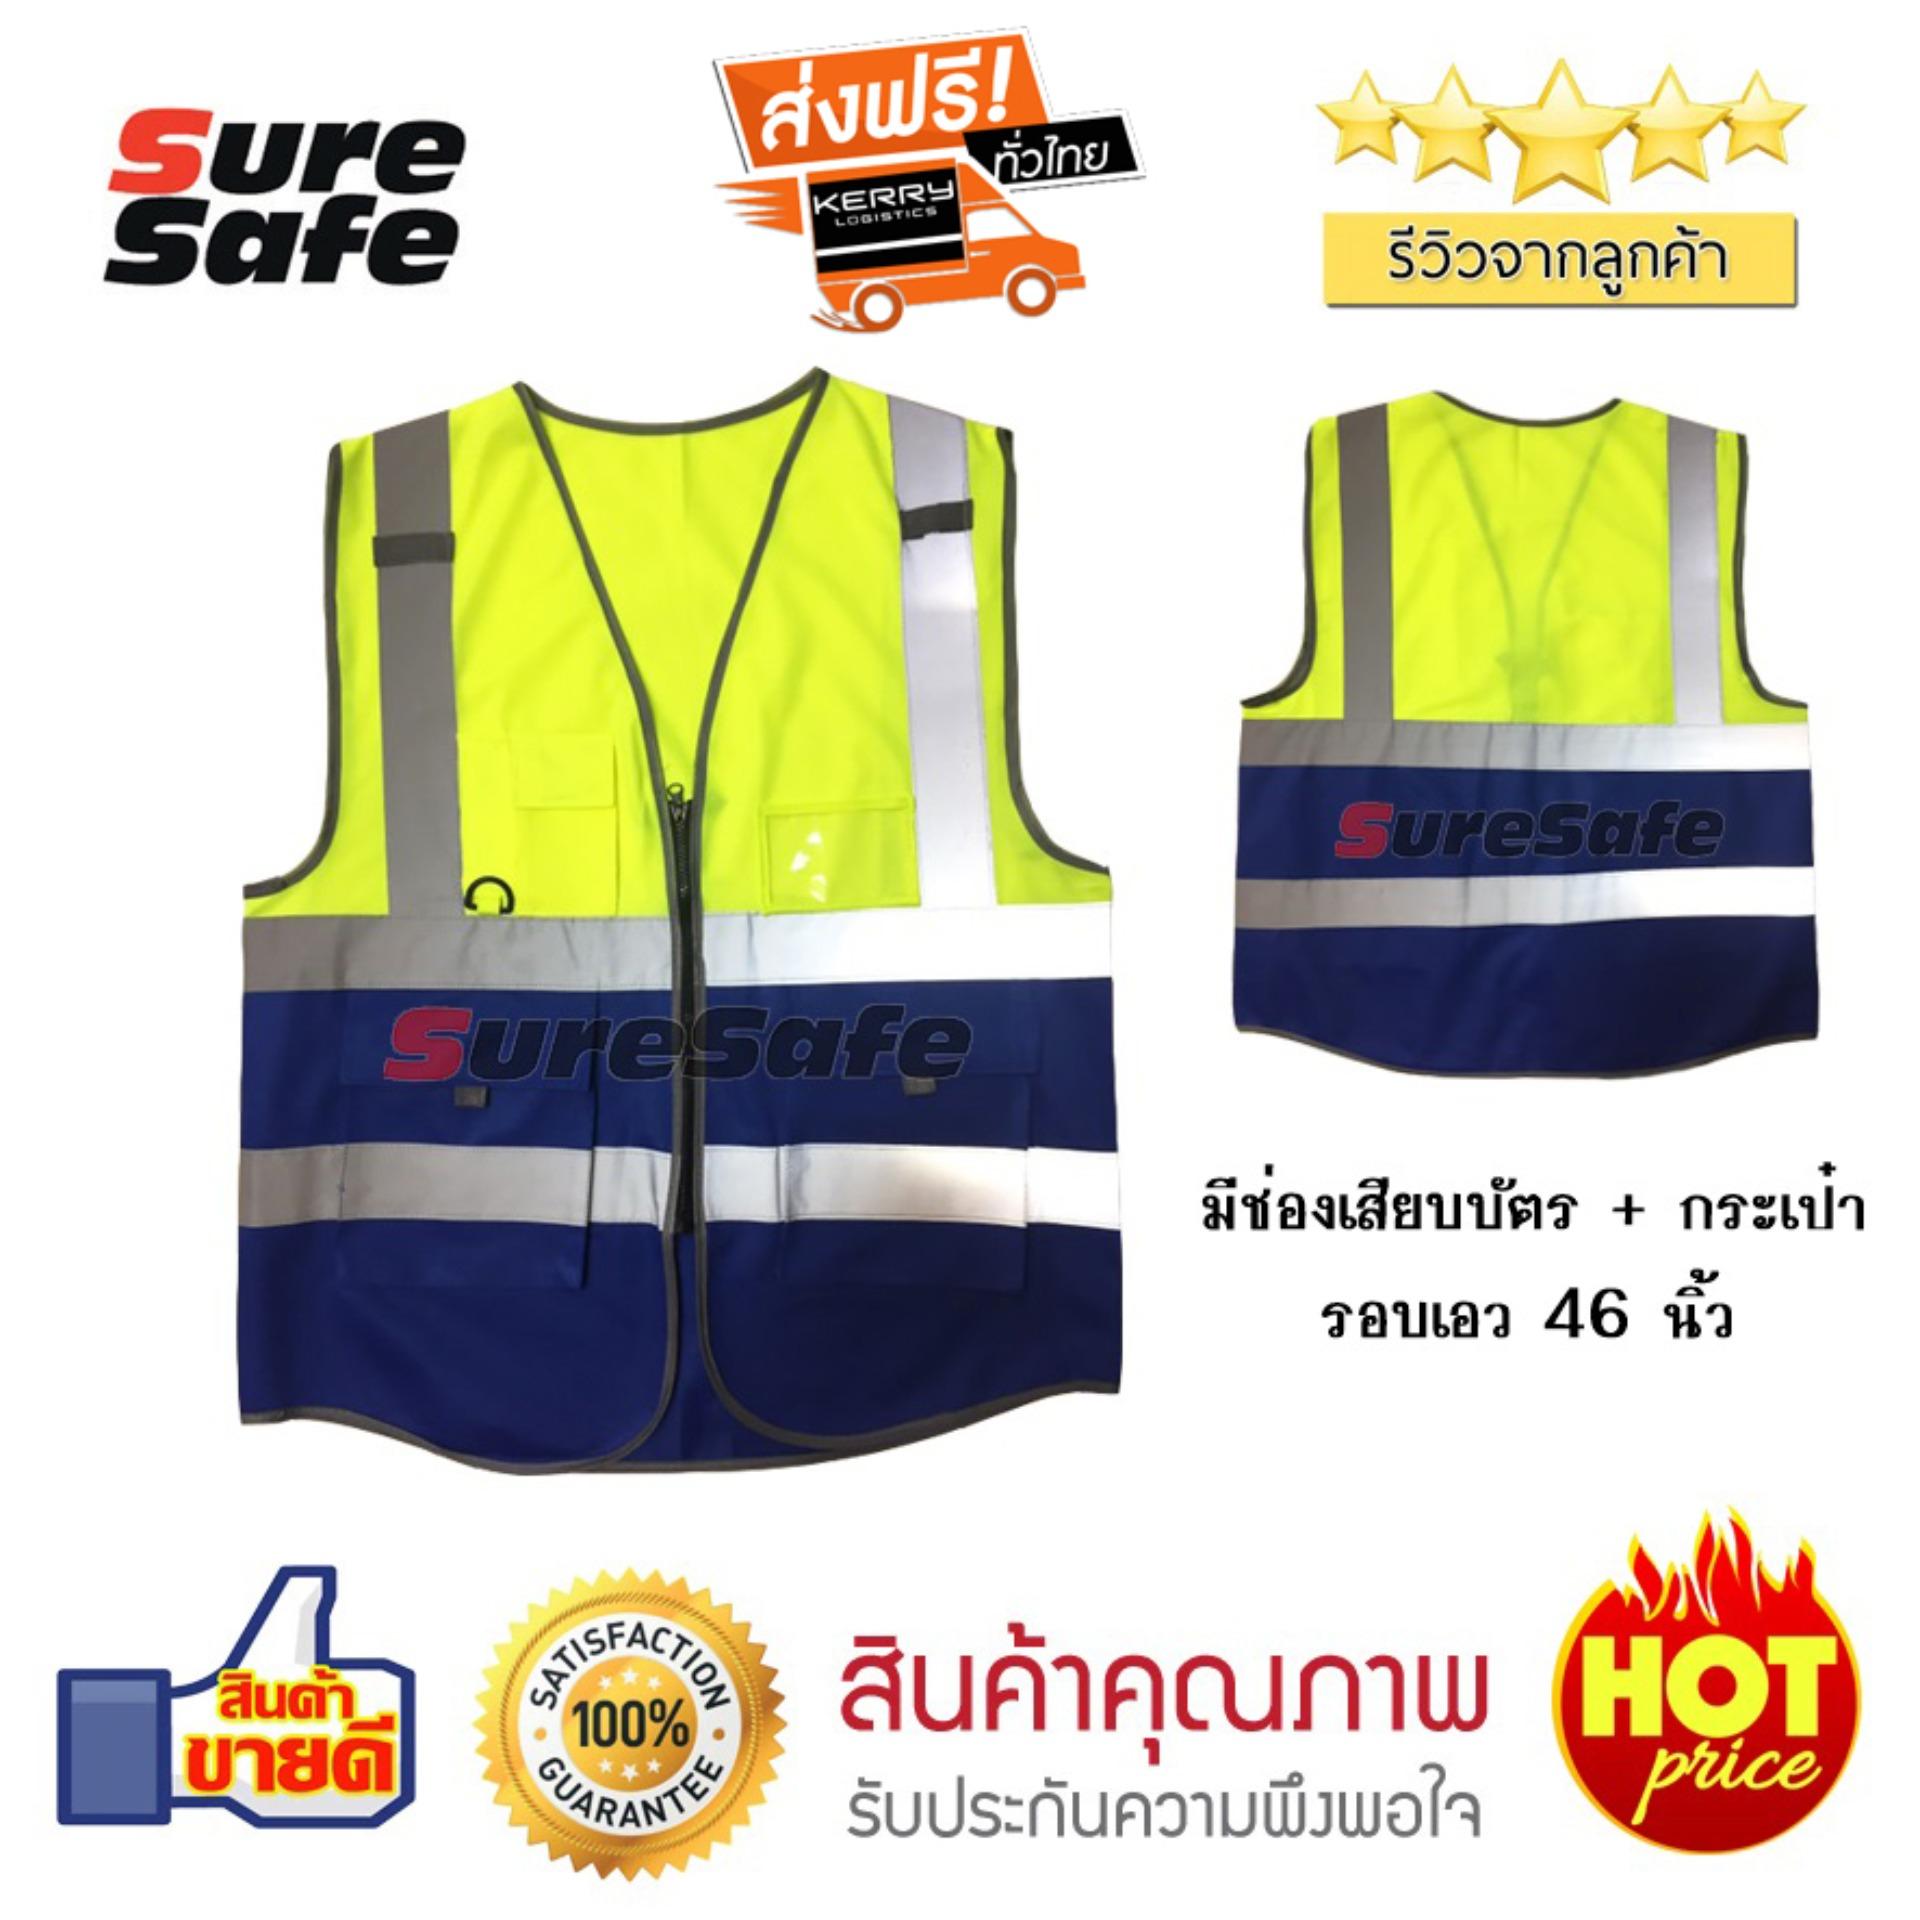 Suresafe Safety Vest เสื้อสะท้อนแสงรุ่นเต็มตัว สีเหลือง/น้ำเงิน มีช่องเสียบบัตรและปากกา